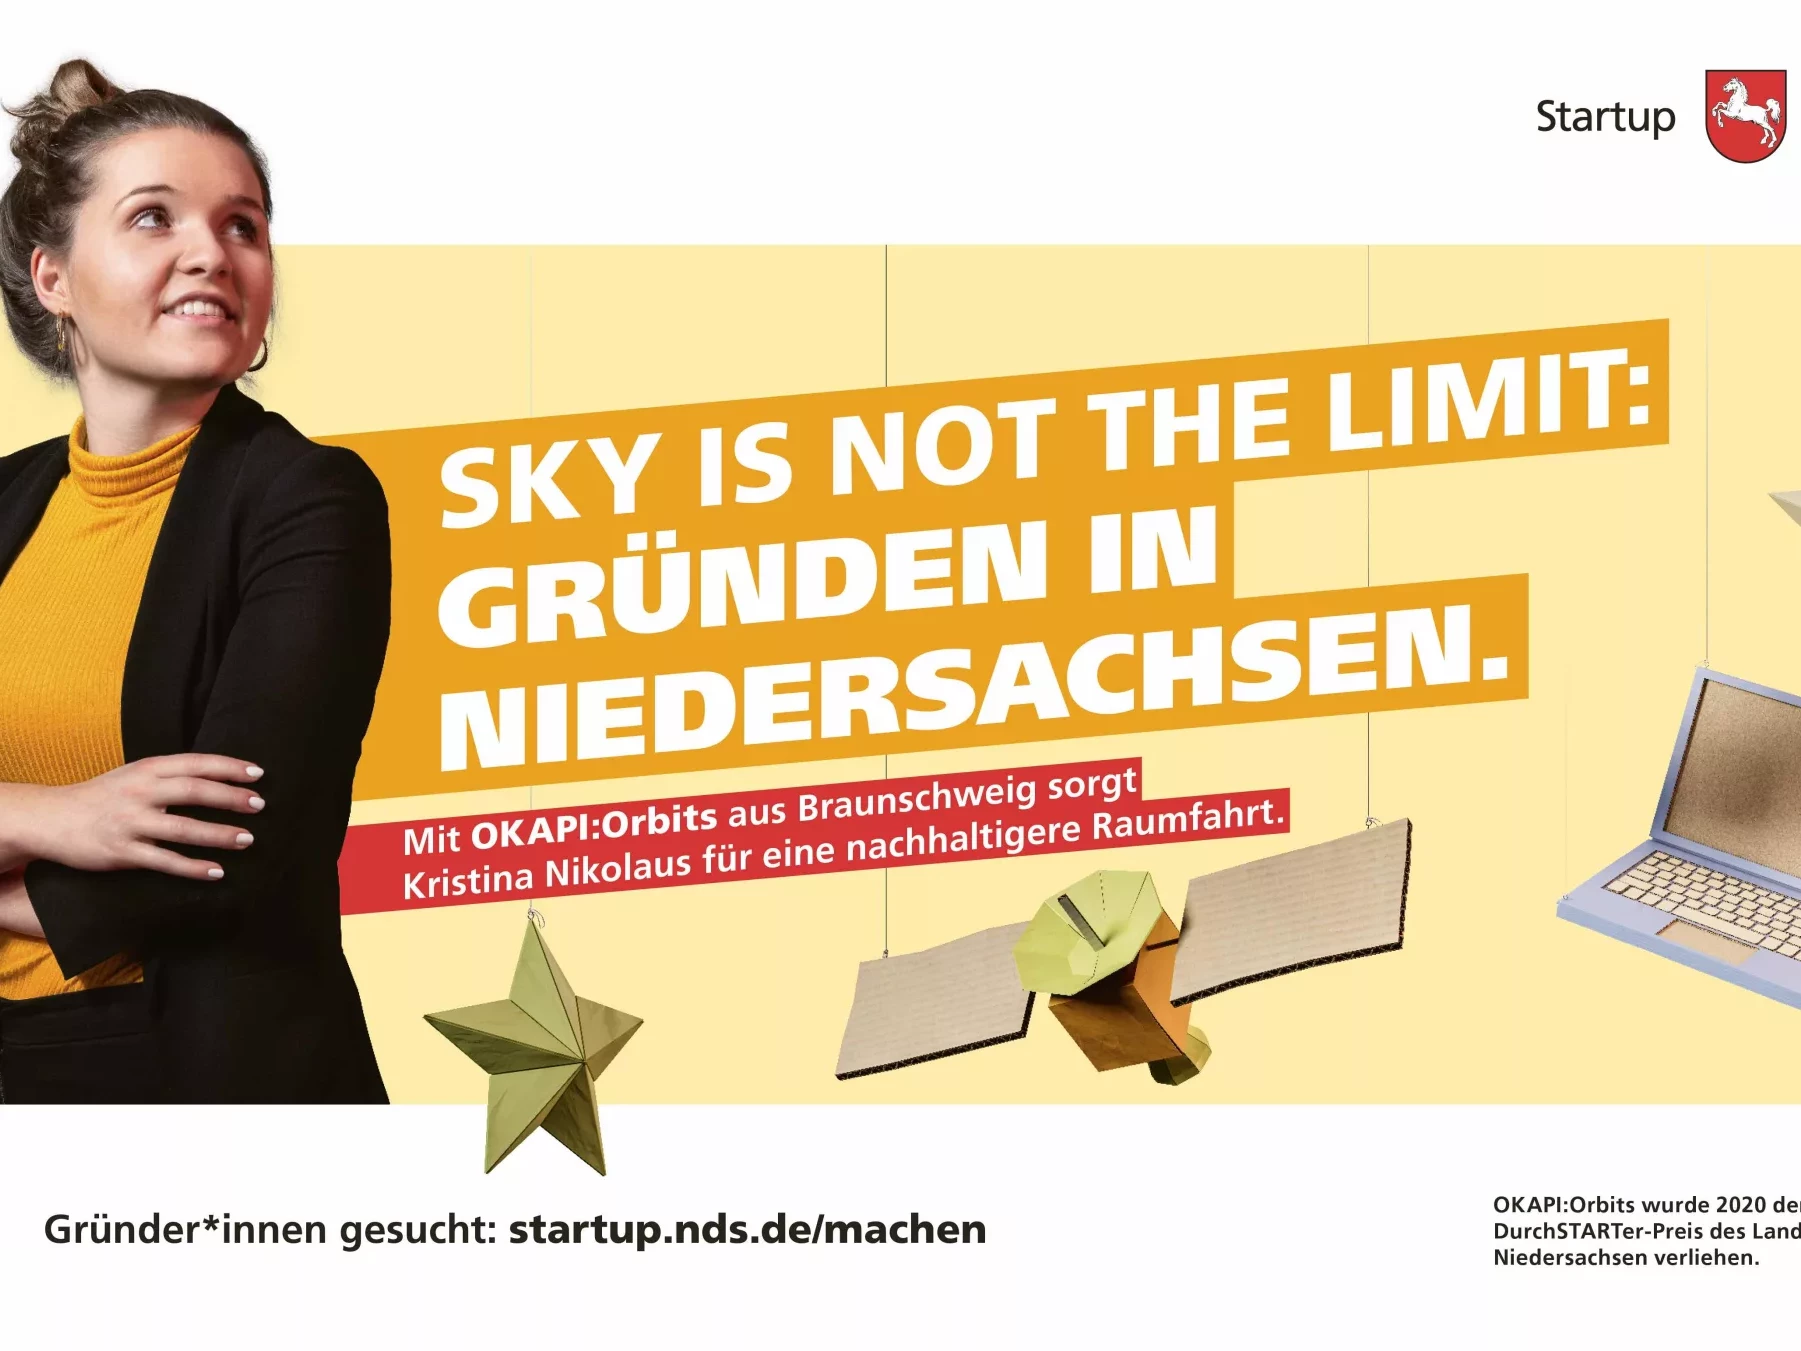 Anzeigenbild der Gründerin Kristina Nikolaus mit ihrem Startup OKAPI:Orbits. Die Headline der Anzeige lautet 